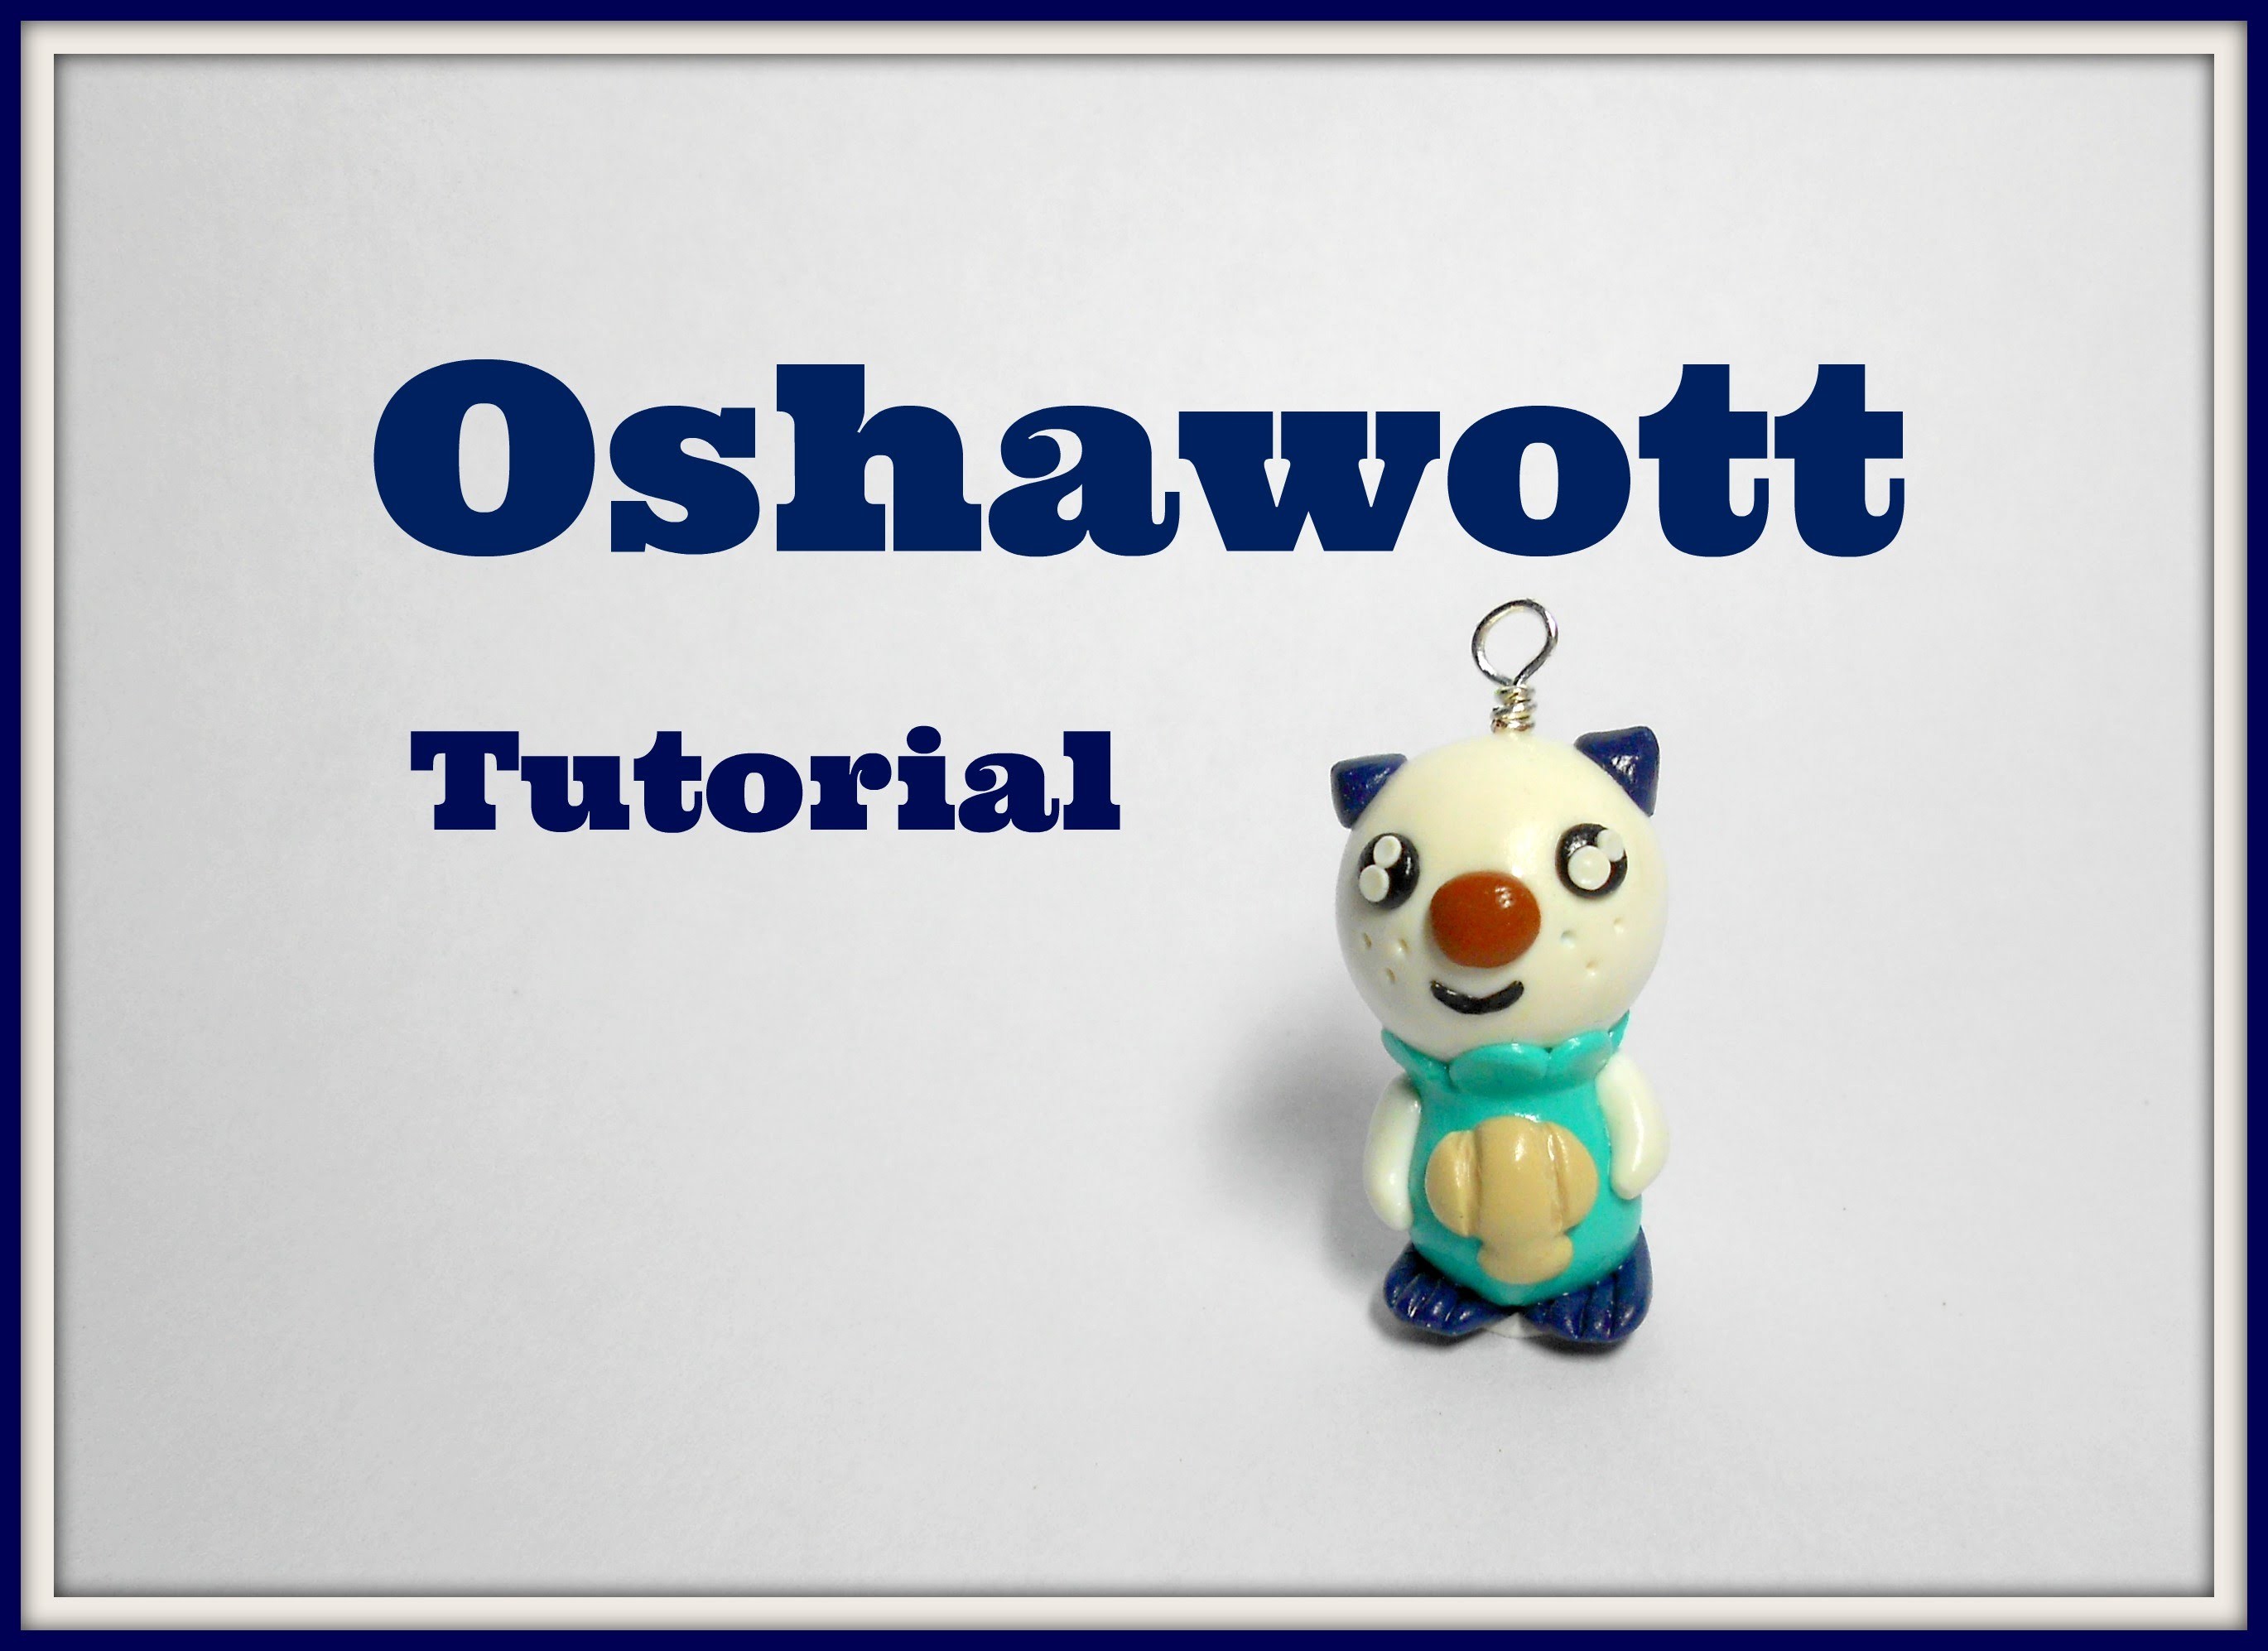 Pokémon series: Oshawott polymer clay tutorial